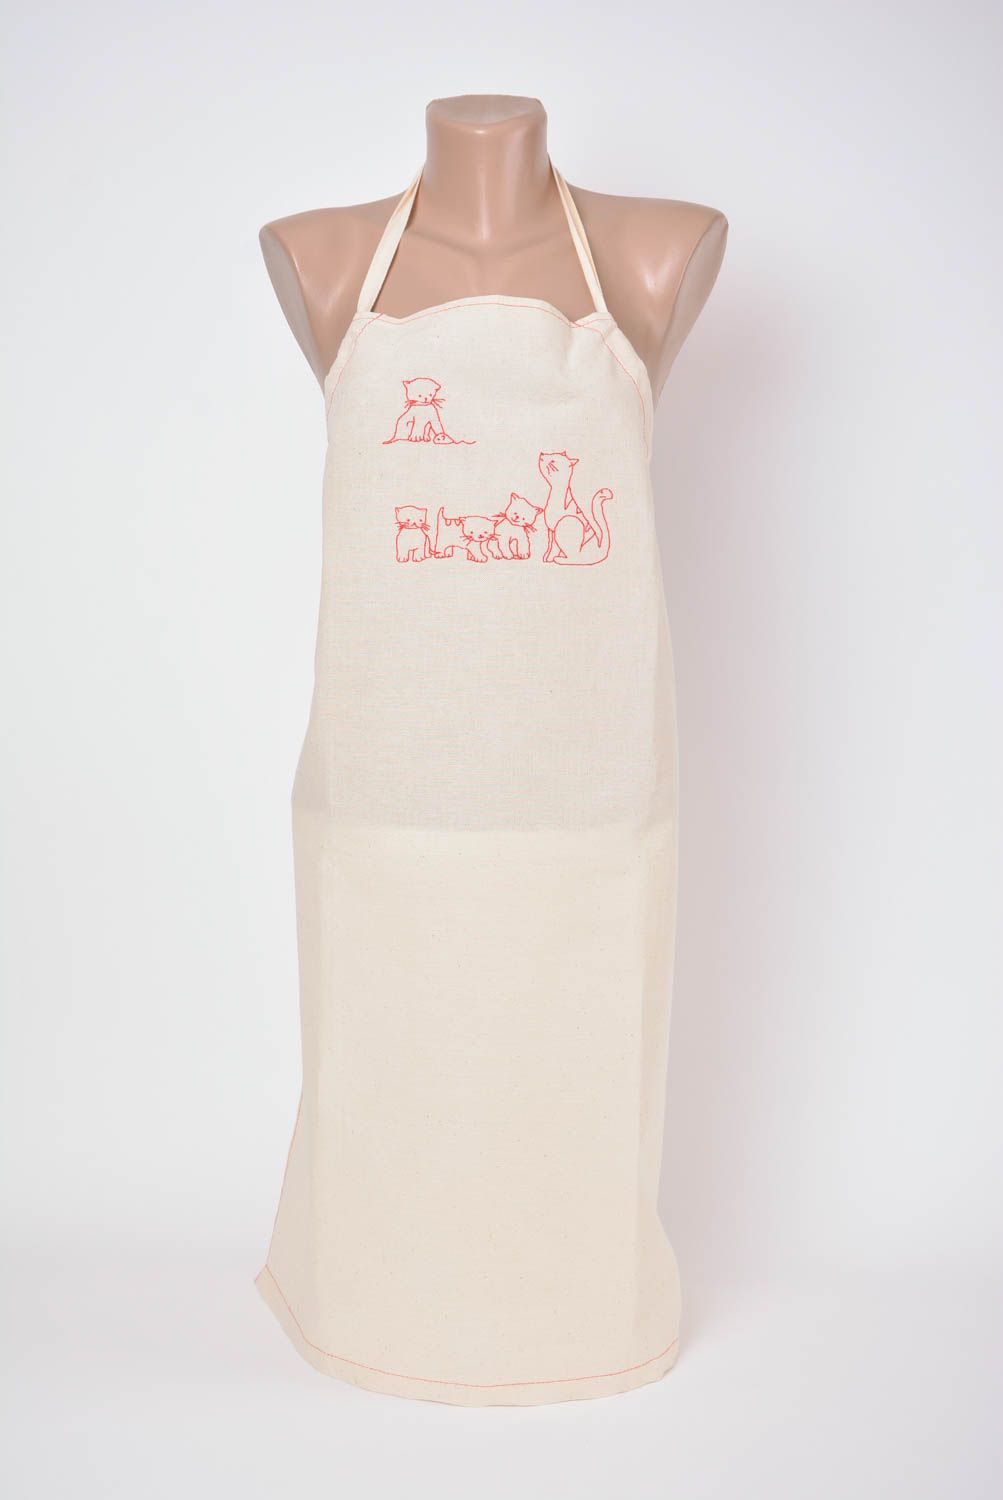 Женский фартук из ткани полульна с вышивкой ручной работы белый Котики фото 1